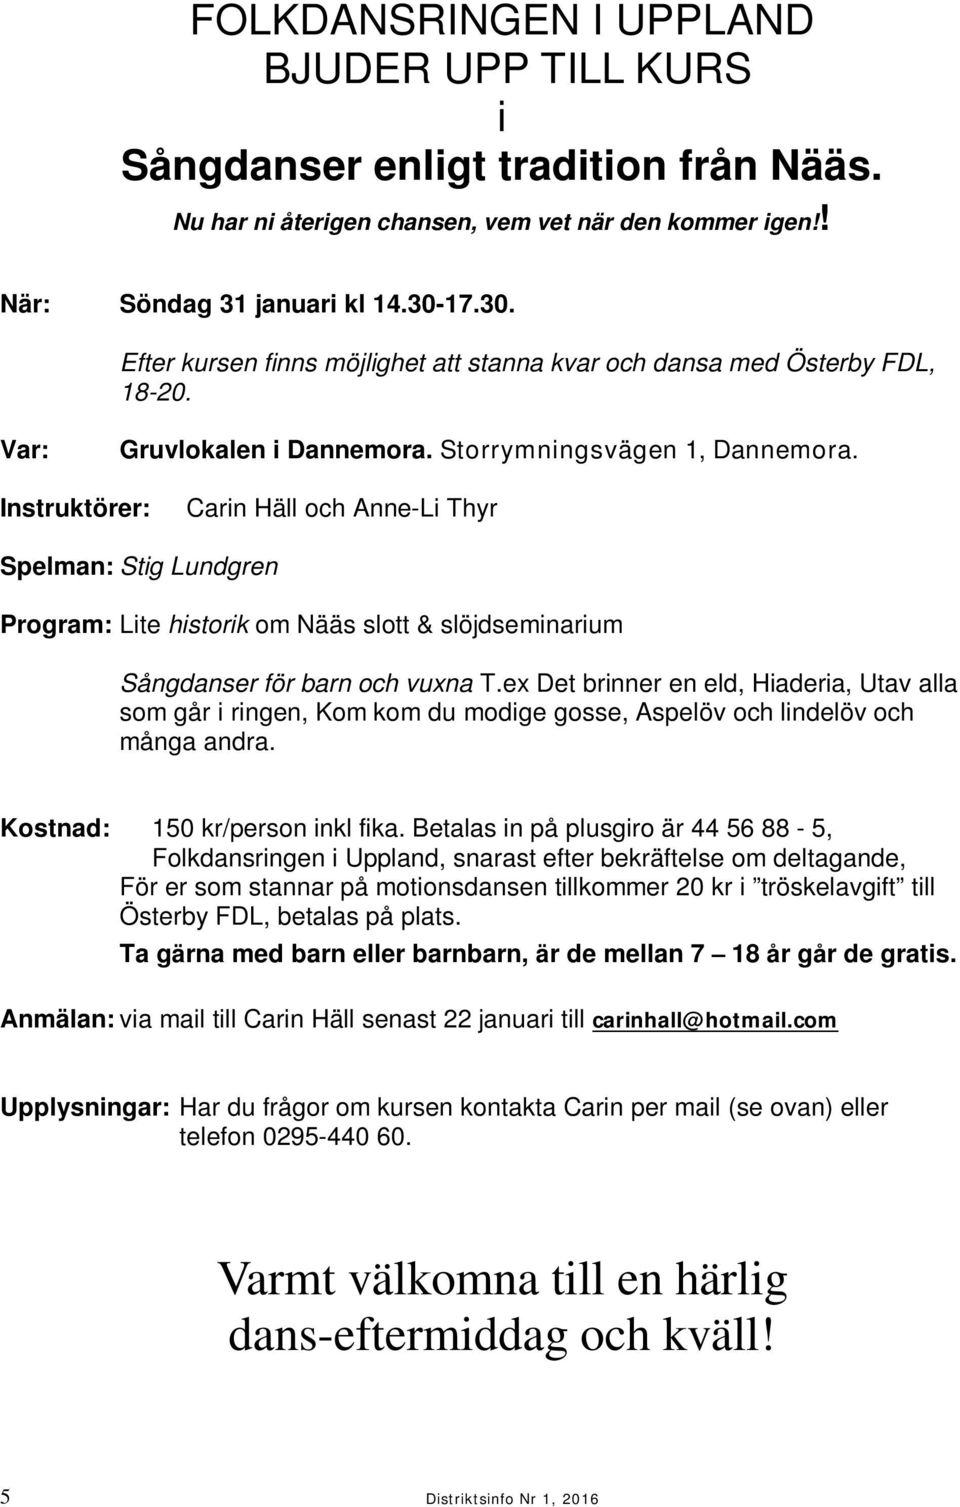 Instruktörer: Carin Häll och Anne-Li Thyr Spelman: Stig Lundgren Program: Lite historik om Nääs slott & slöjdseminarium Sångdanser för barn och vuxna T.